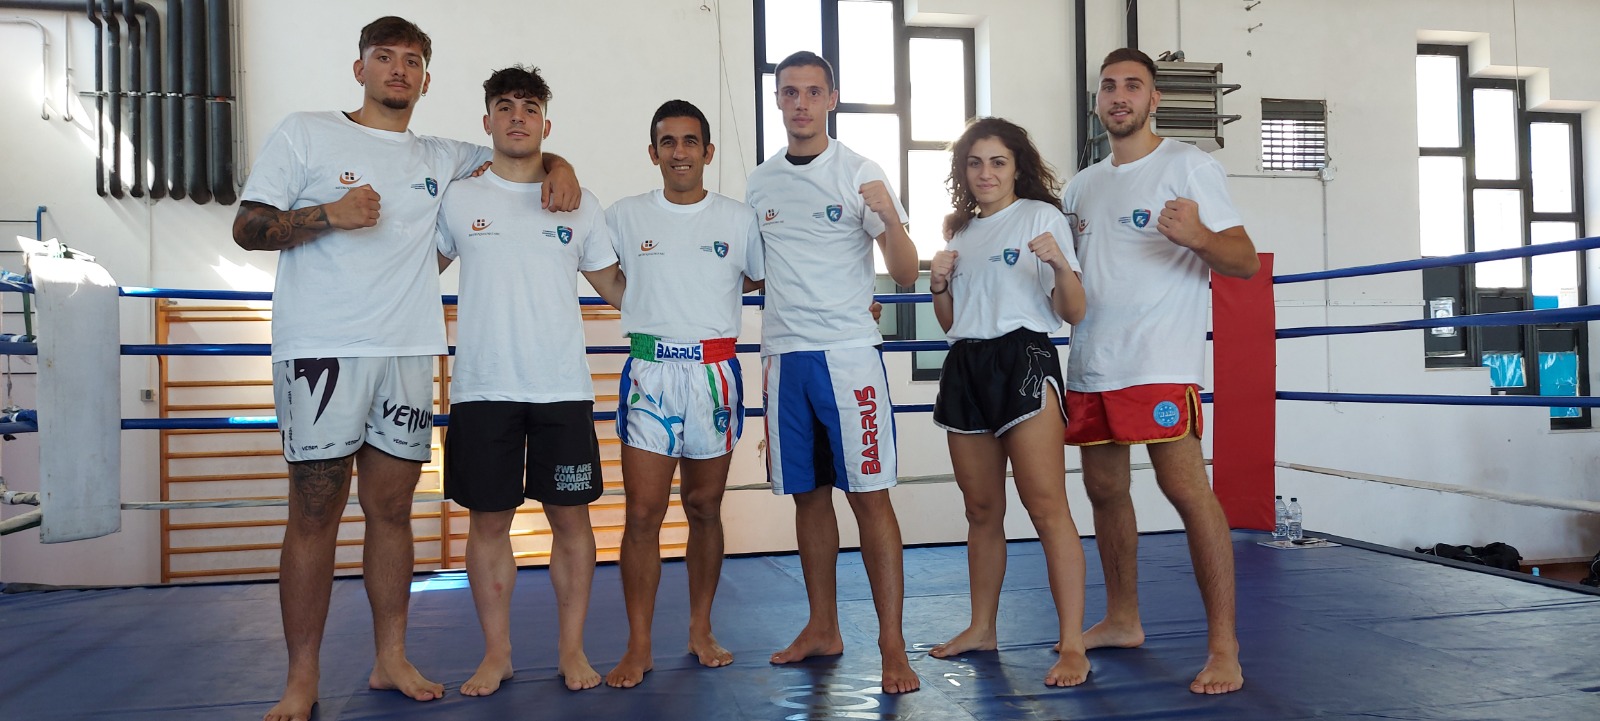 Kickboxing, gli atleti lucani verso i Campionati mondiali e gli Europei